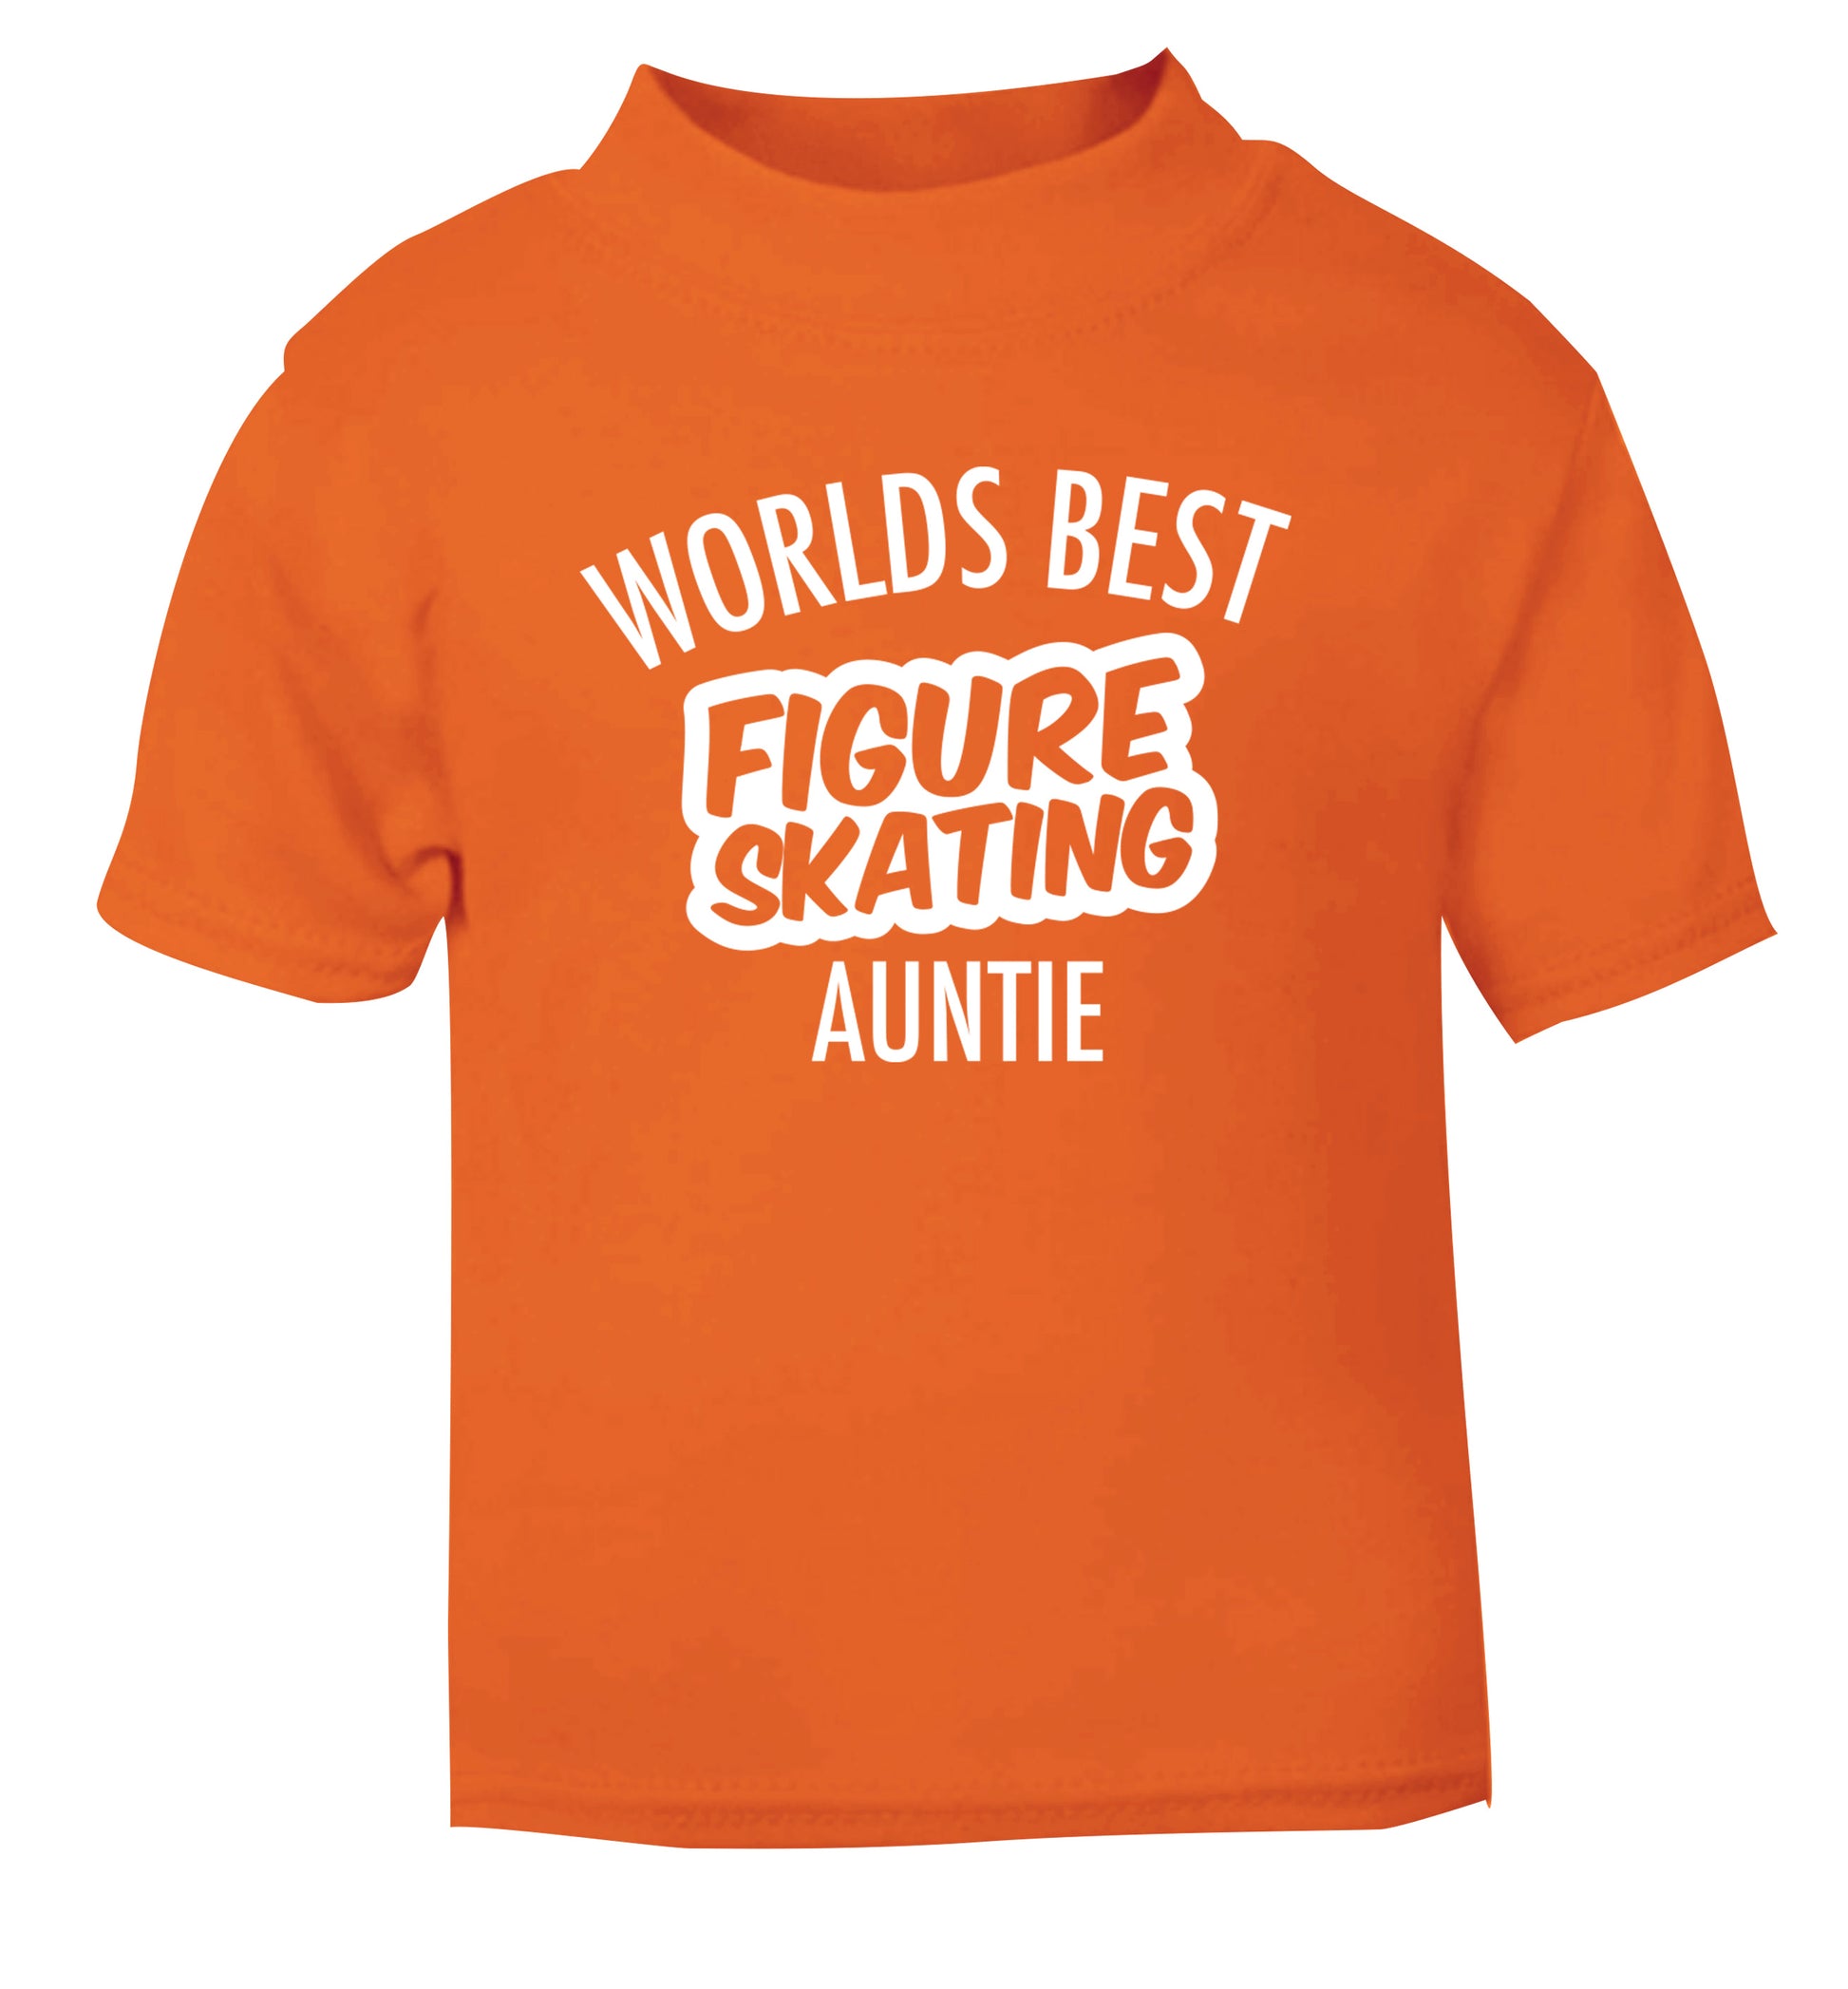 Worlds best figure skating auntie orange Baby Toddler Tshirt 2 Years